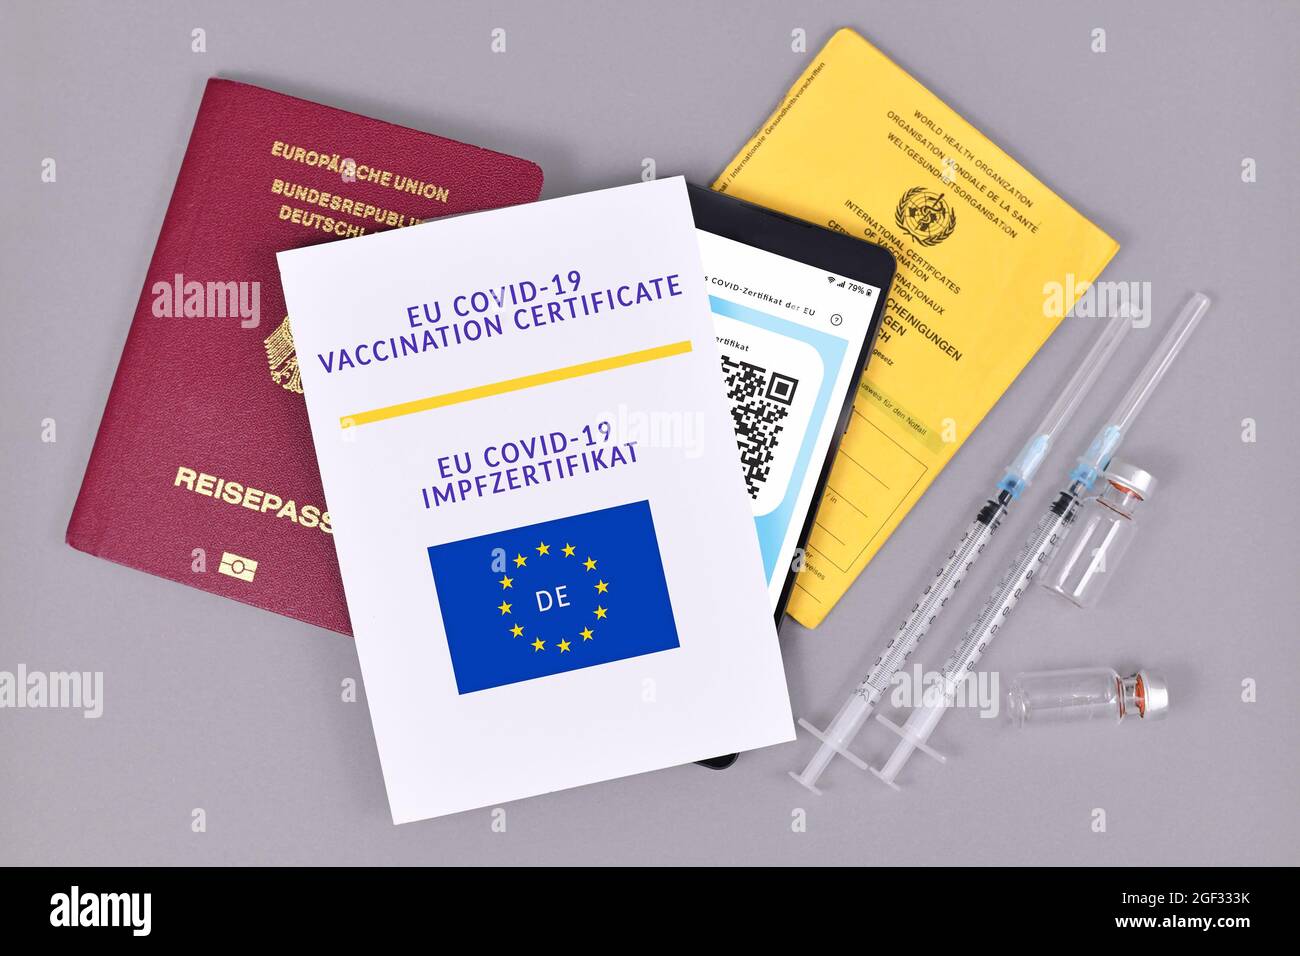 Deutschland - Juli 2021: EU-Impfpass COVID-19 auf Papier und digital am Telefon, Impfpass, Reiseausweis und Spritzen mit Fläschchen auf grauem b Stockfoto